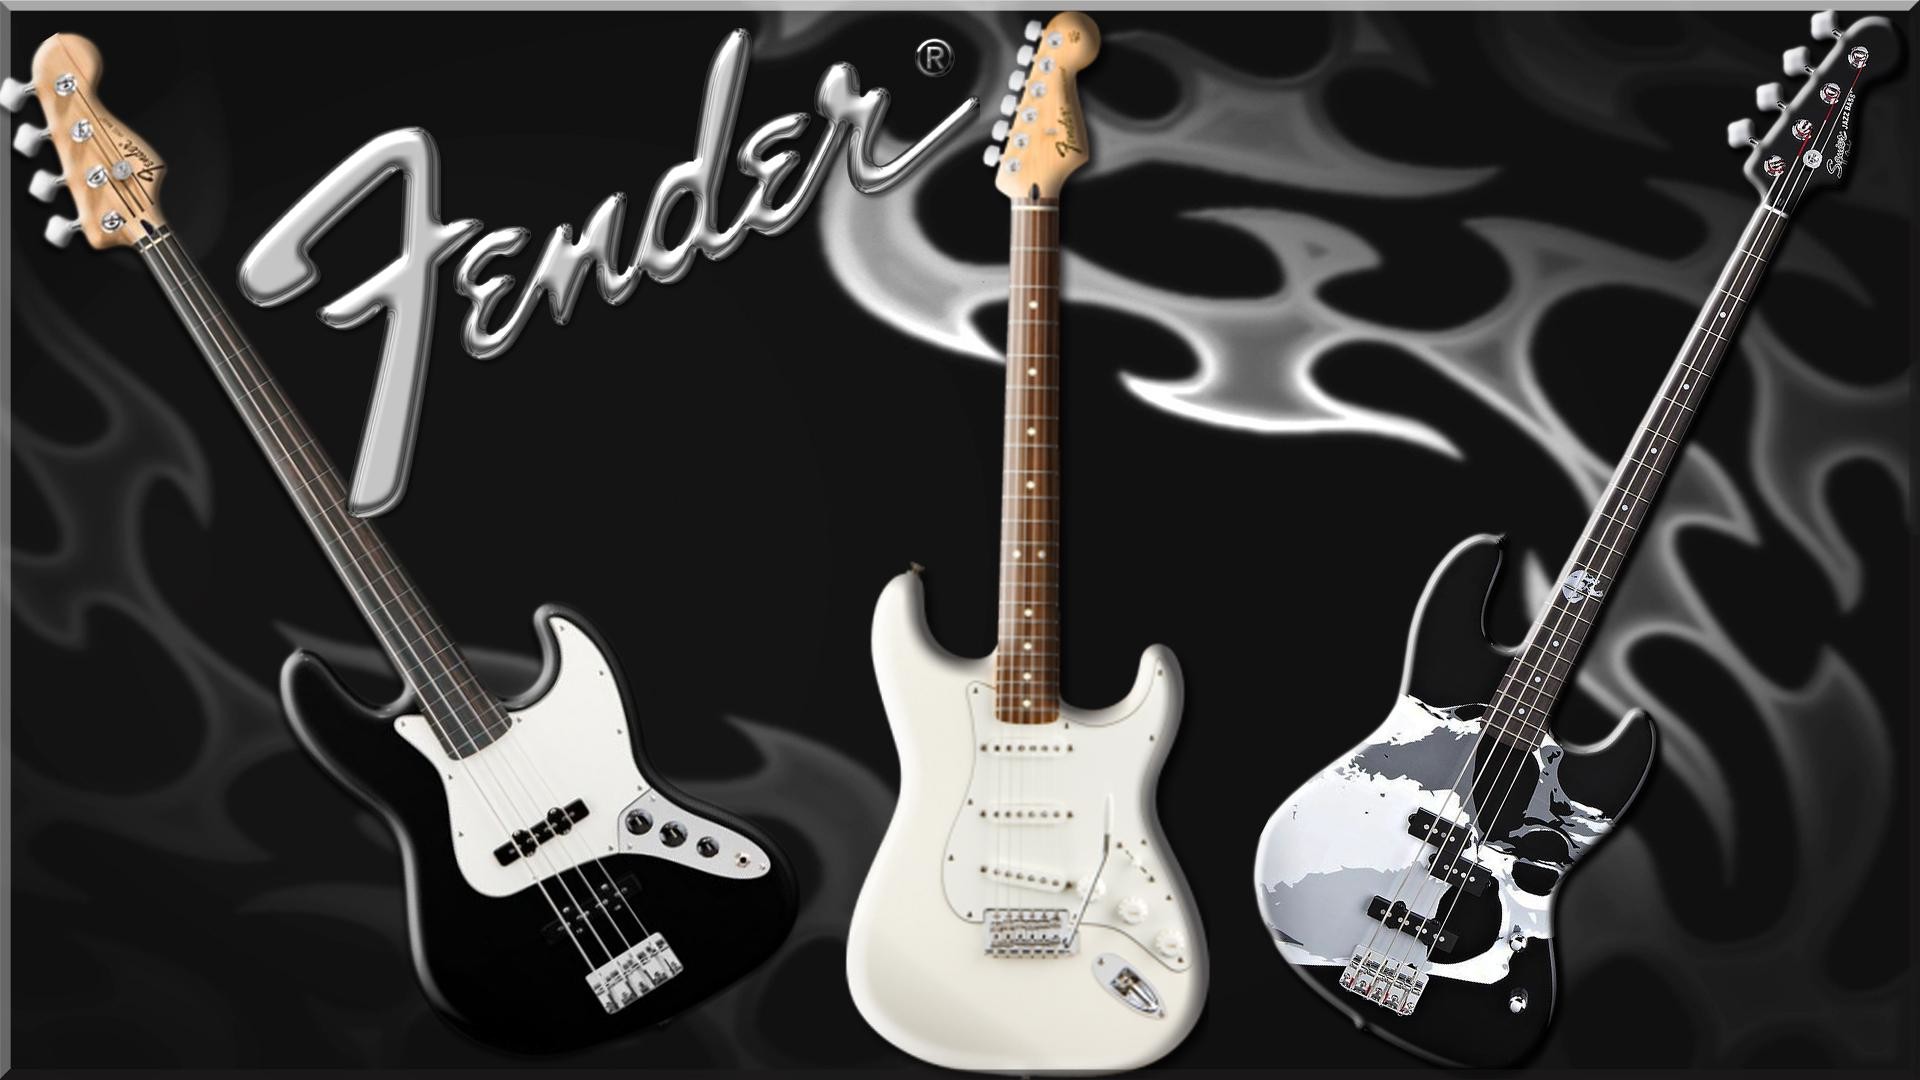 1920x1080 Fender Bass Guitar - Music Wallpaper ID 1422711 - Desktop Nexus  Entertainment